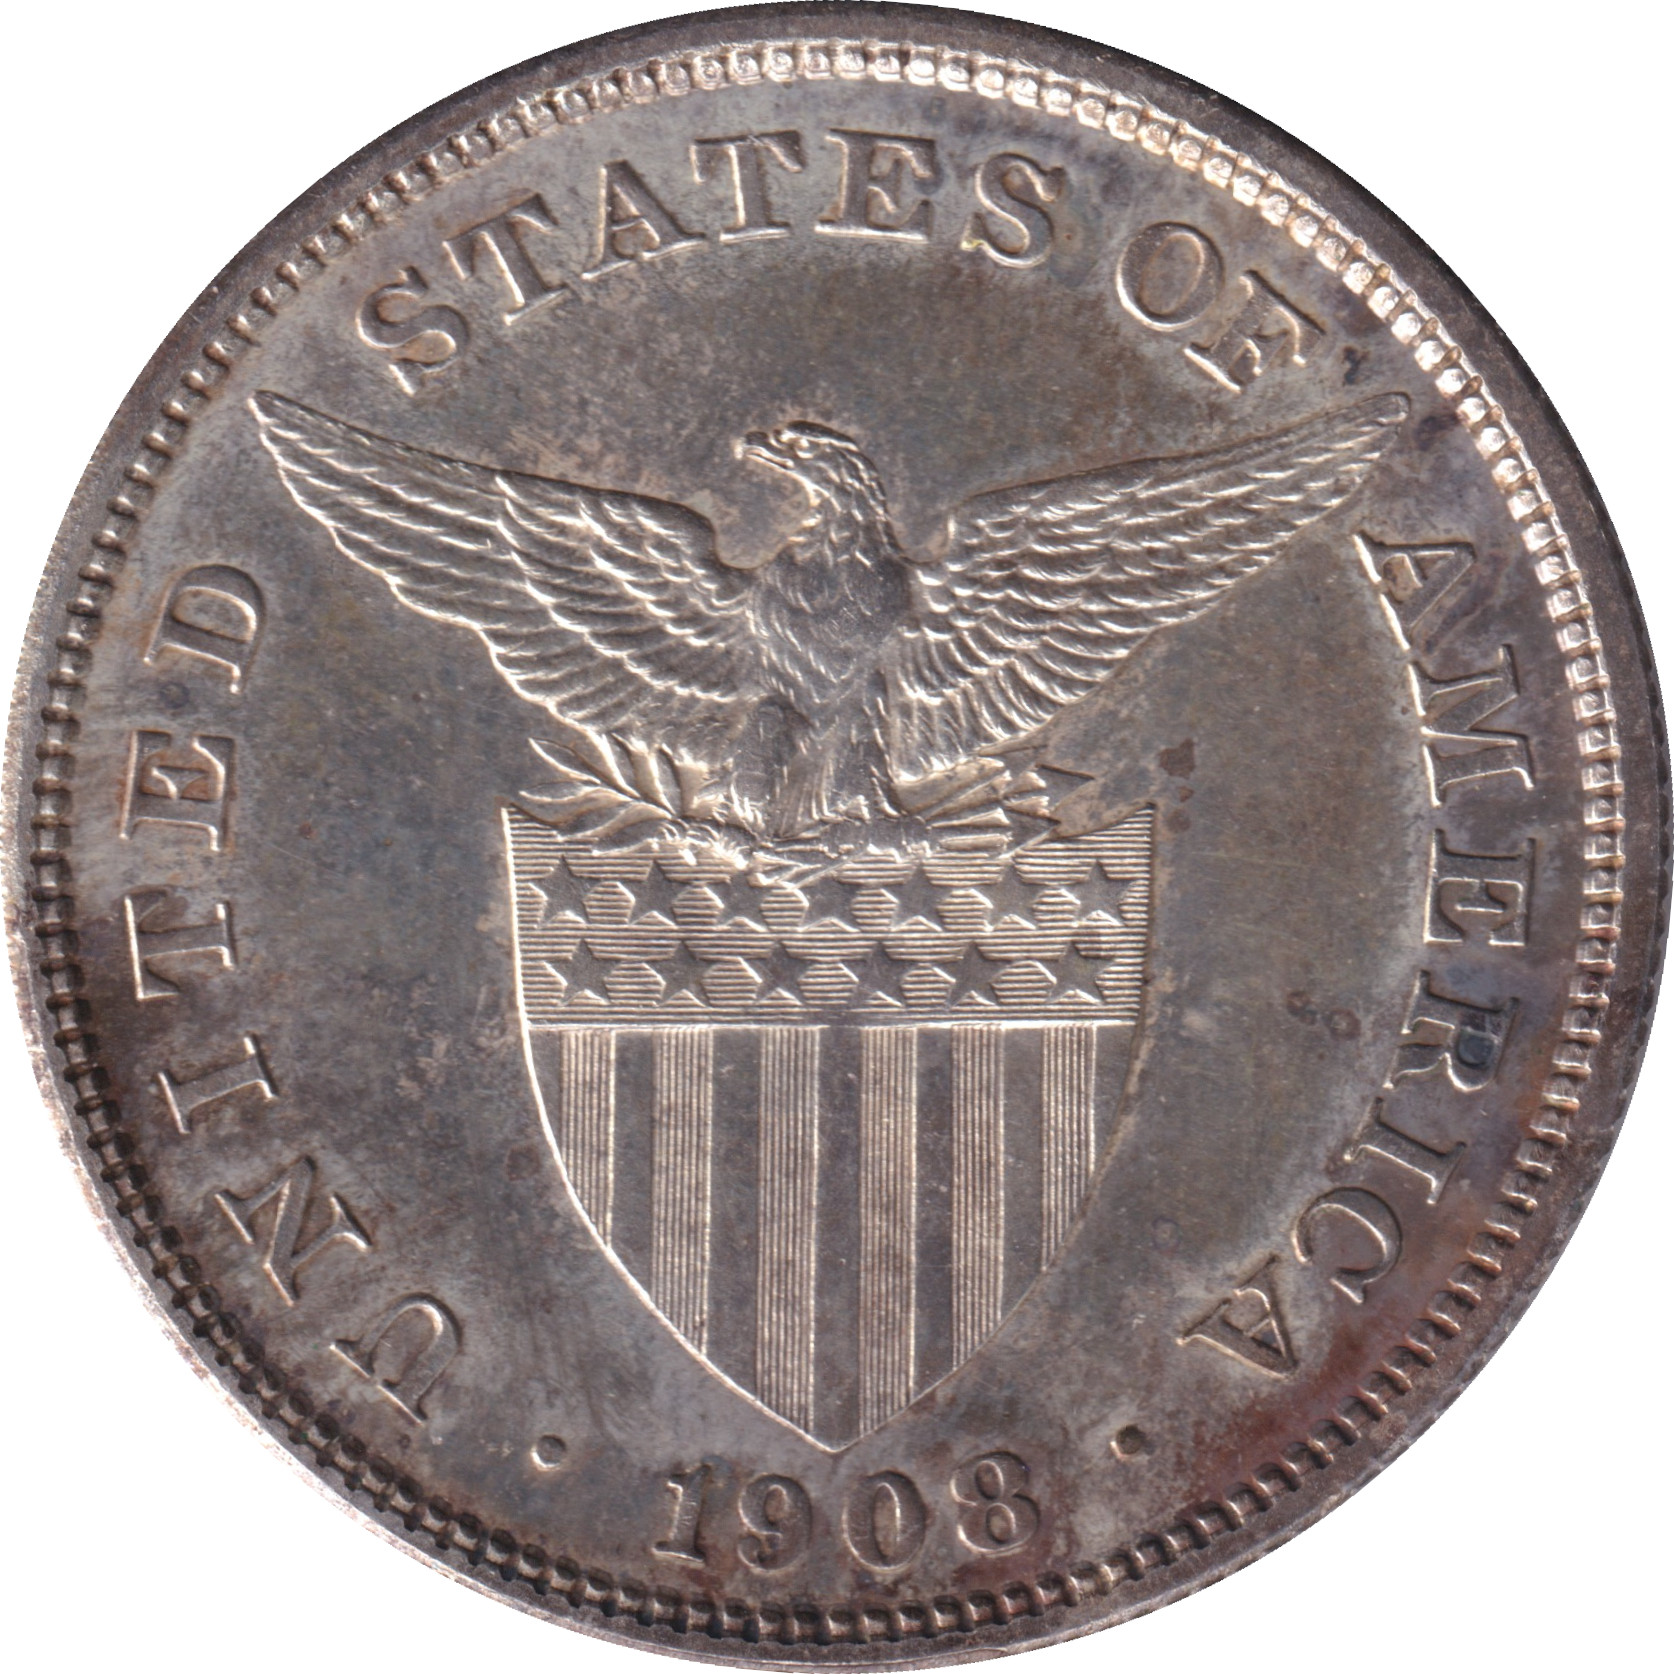 1 peso - Emblème américain - Type léger